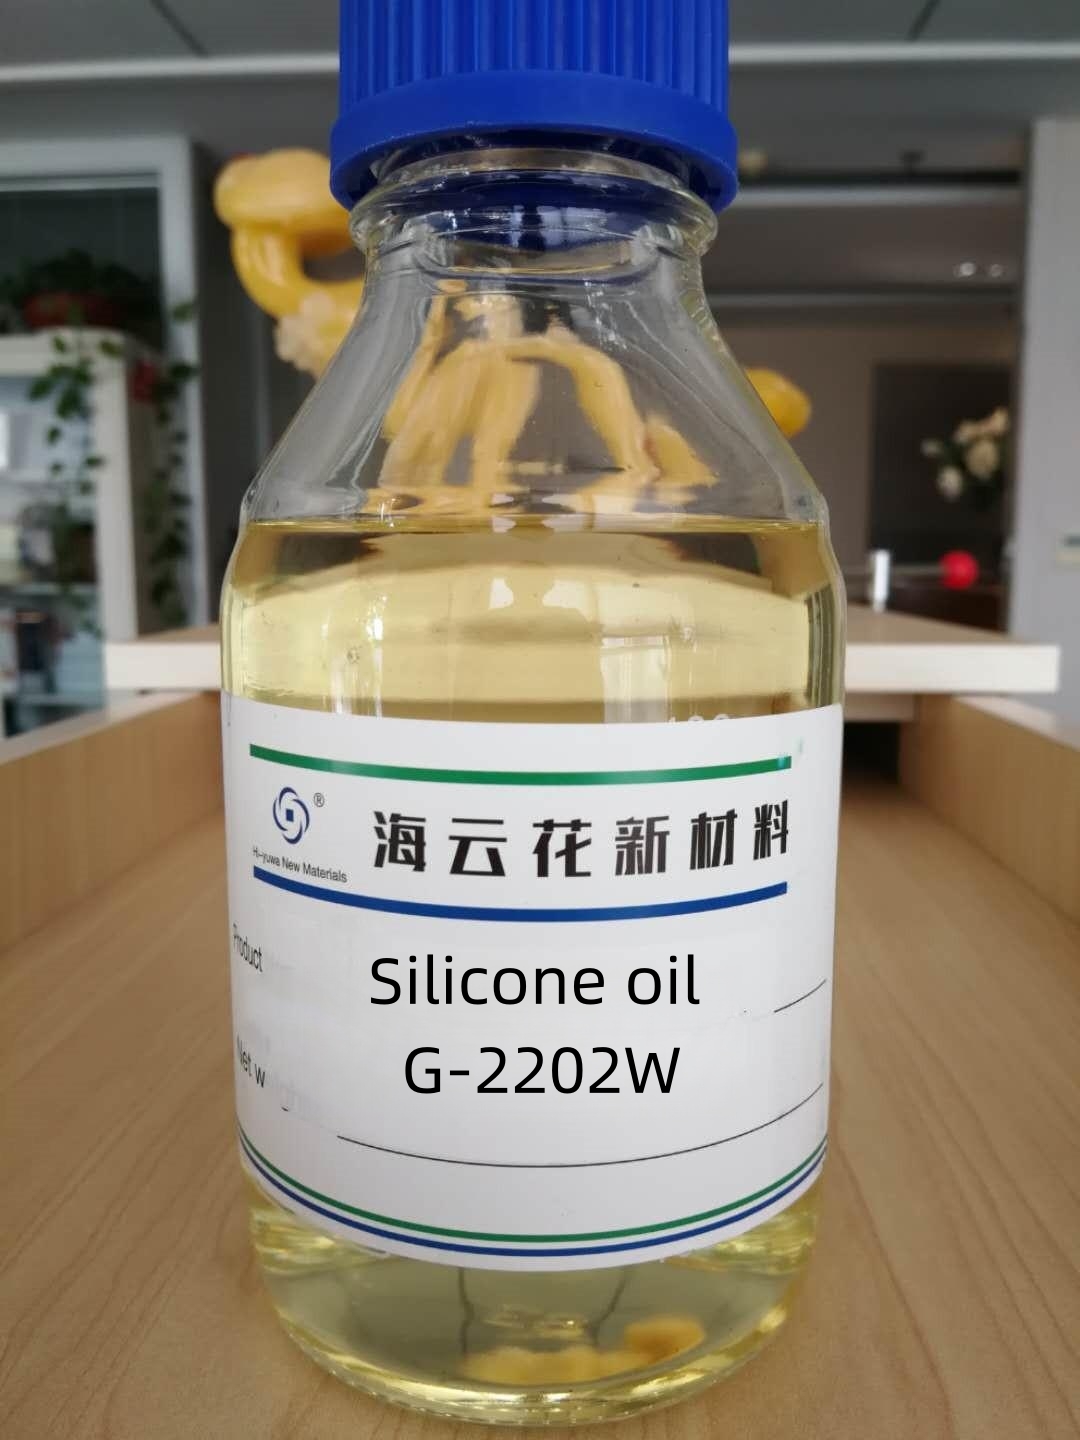 Block silicone oil G-2202W